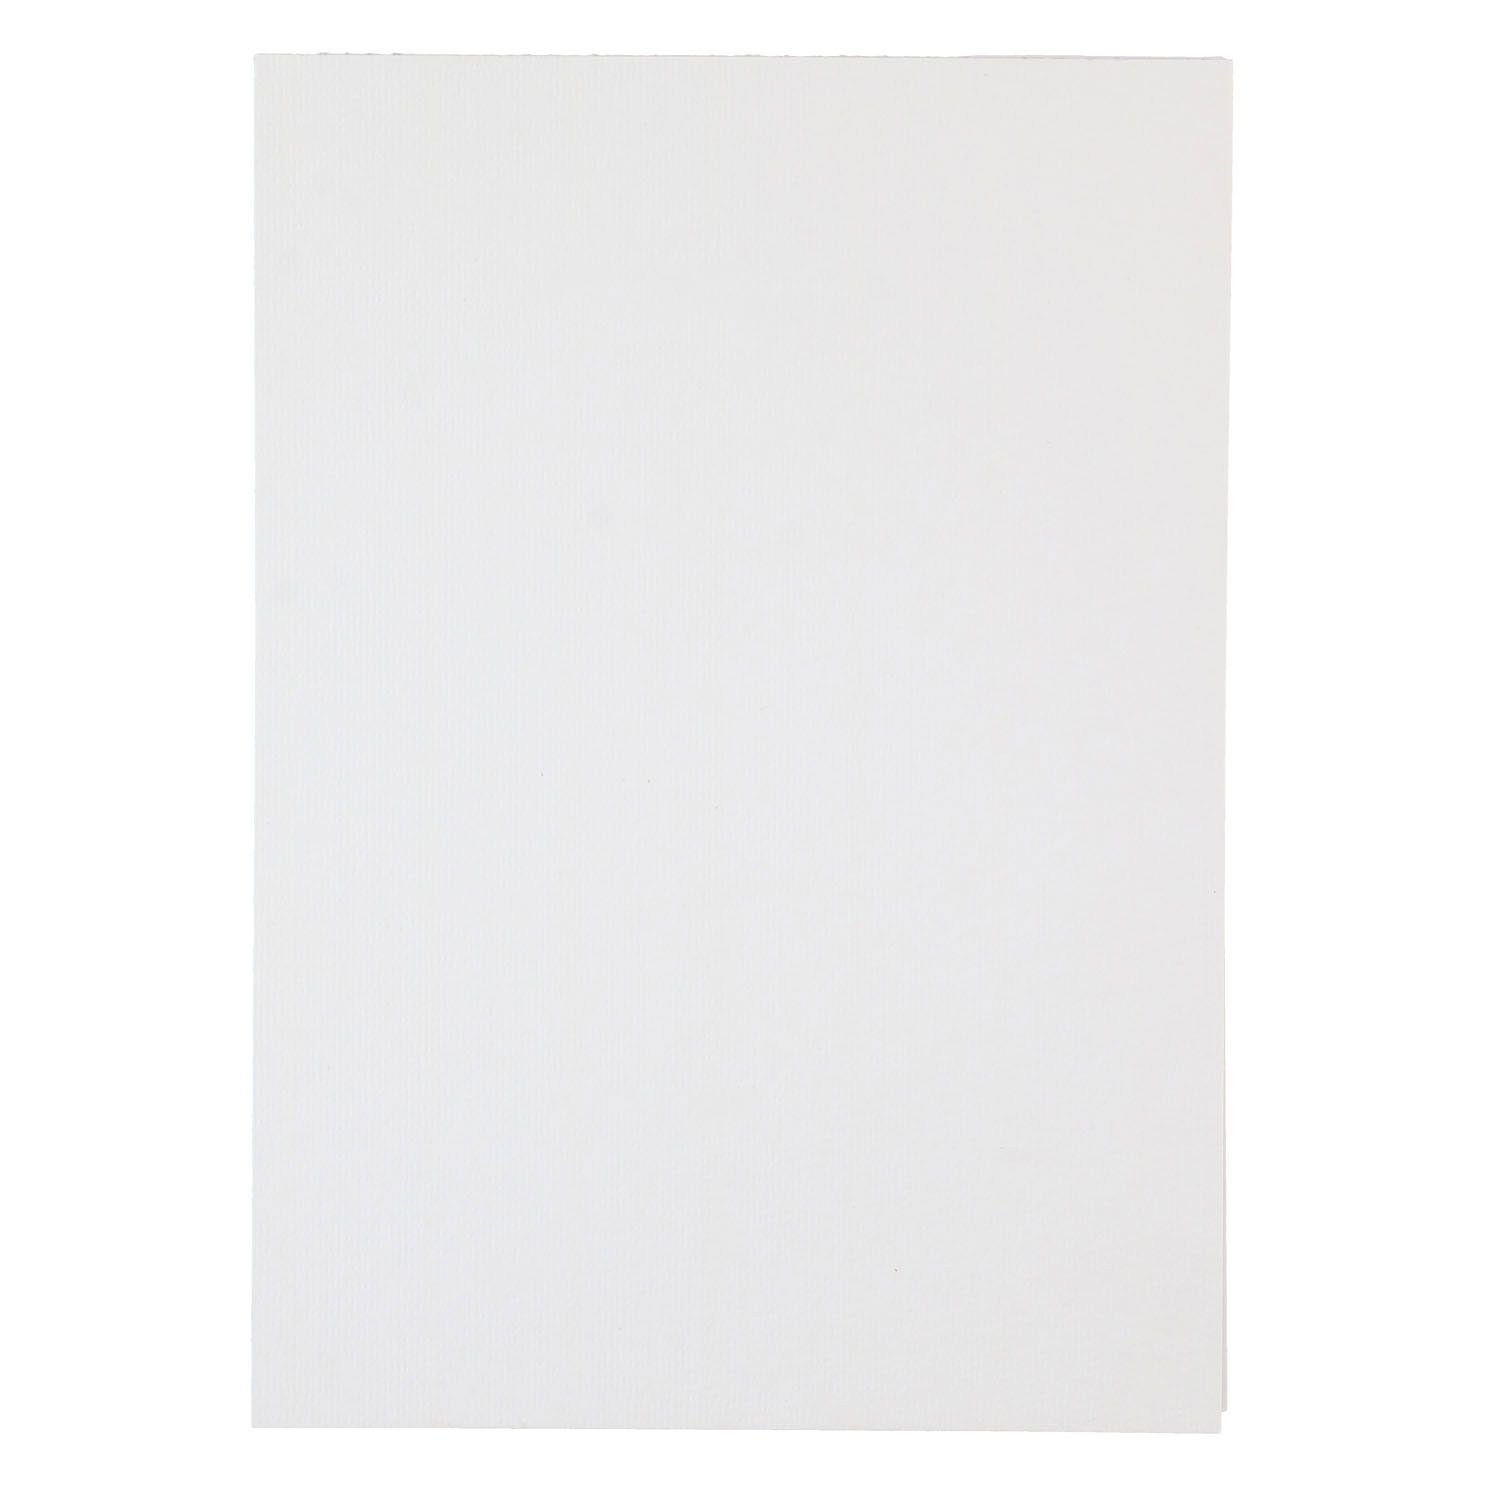 Papier aquarelle blanc, 20 feuilles